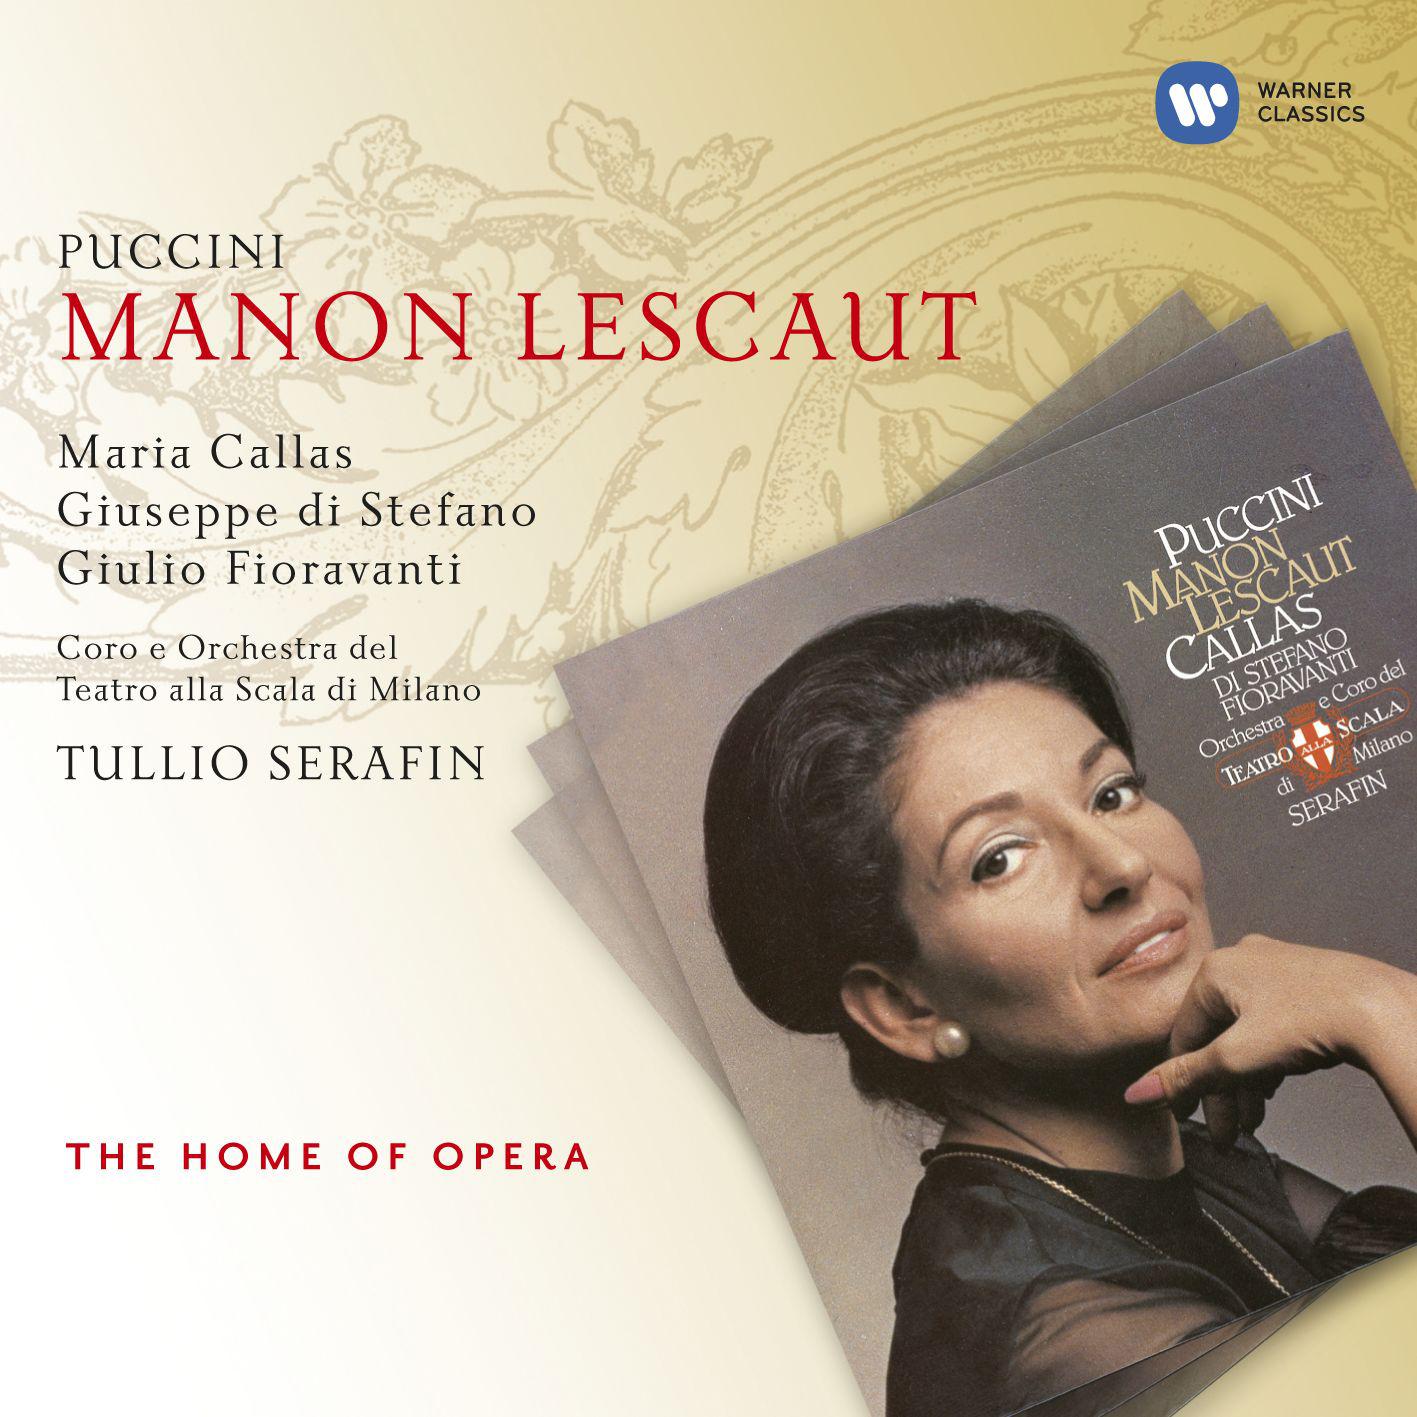 Maria Callas/Giulio Fioravanti/Orchestra del Teatro alla Scala, Milano/Tullio Serafin - Manon Lescaut (1997 Remastered Version), Act II:Dispettosetto questo riccio! (Manon/Lescaut)